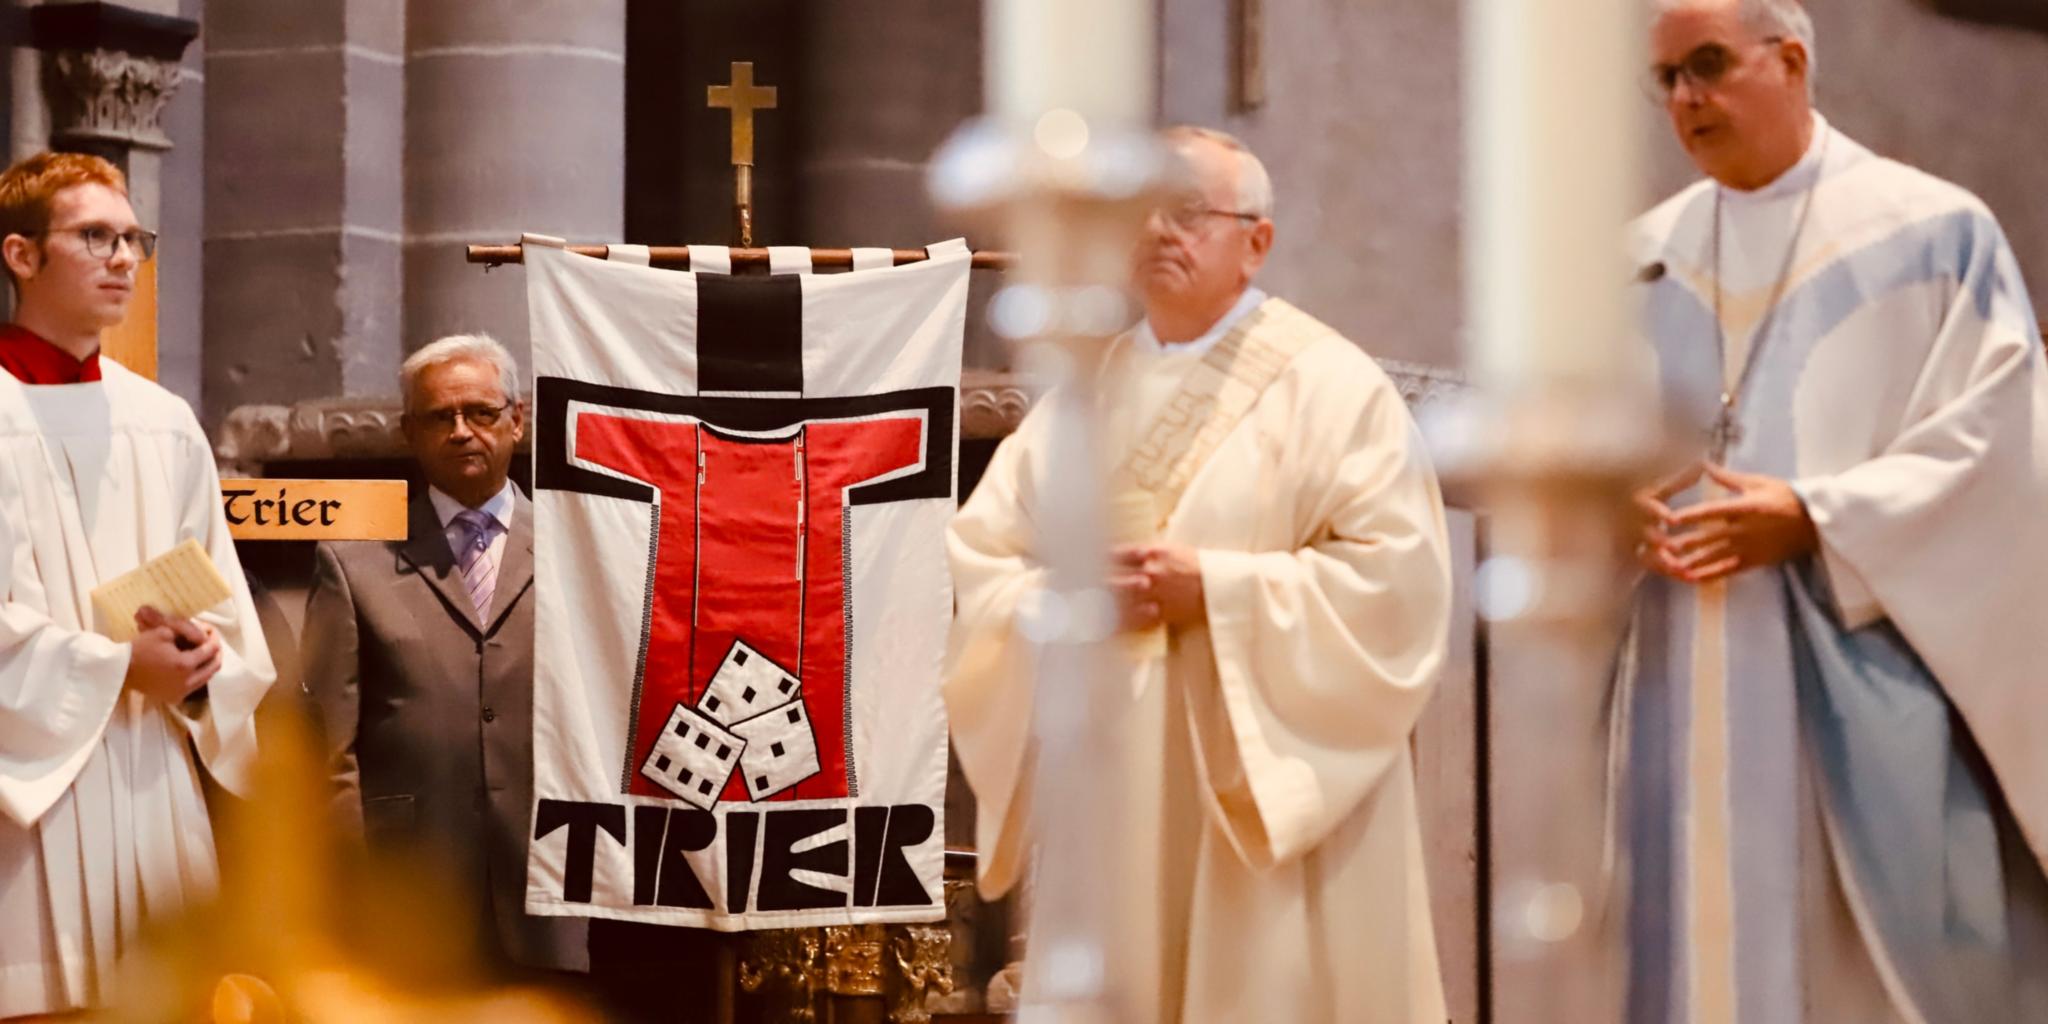 Die Pilgerfahne des Bistums Trier